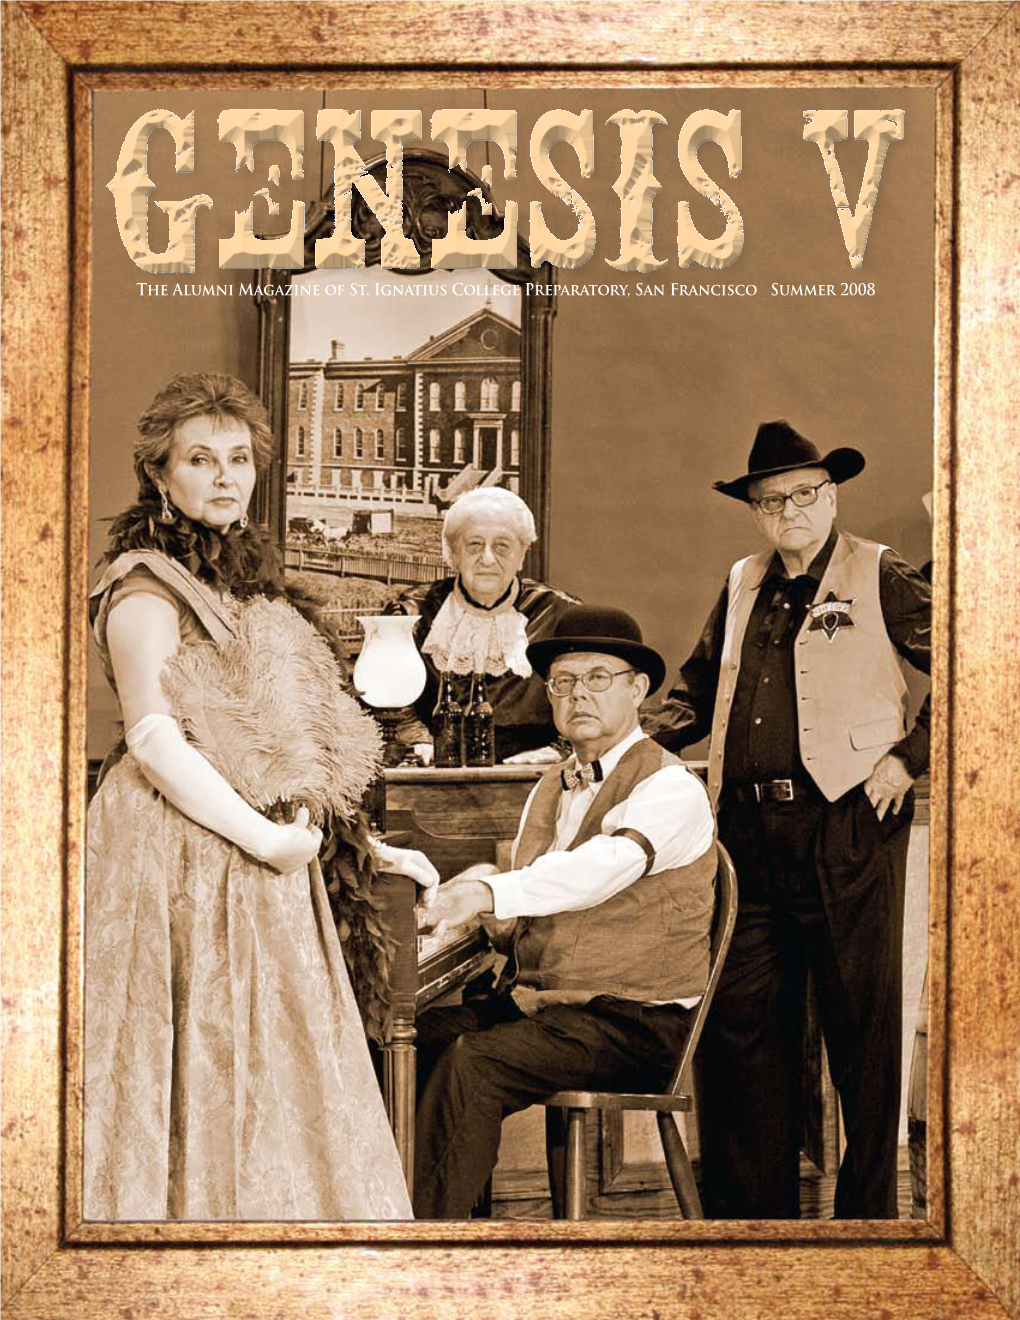 Summer 2008 Edition of Genesis V